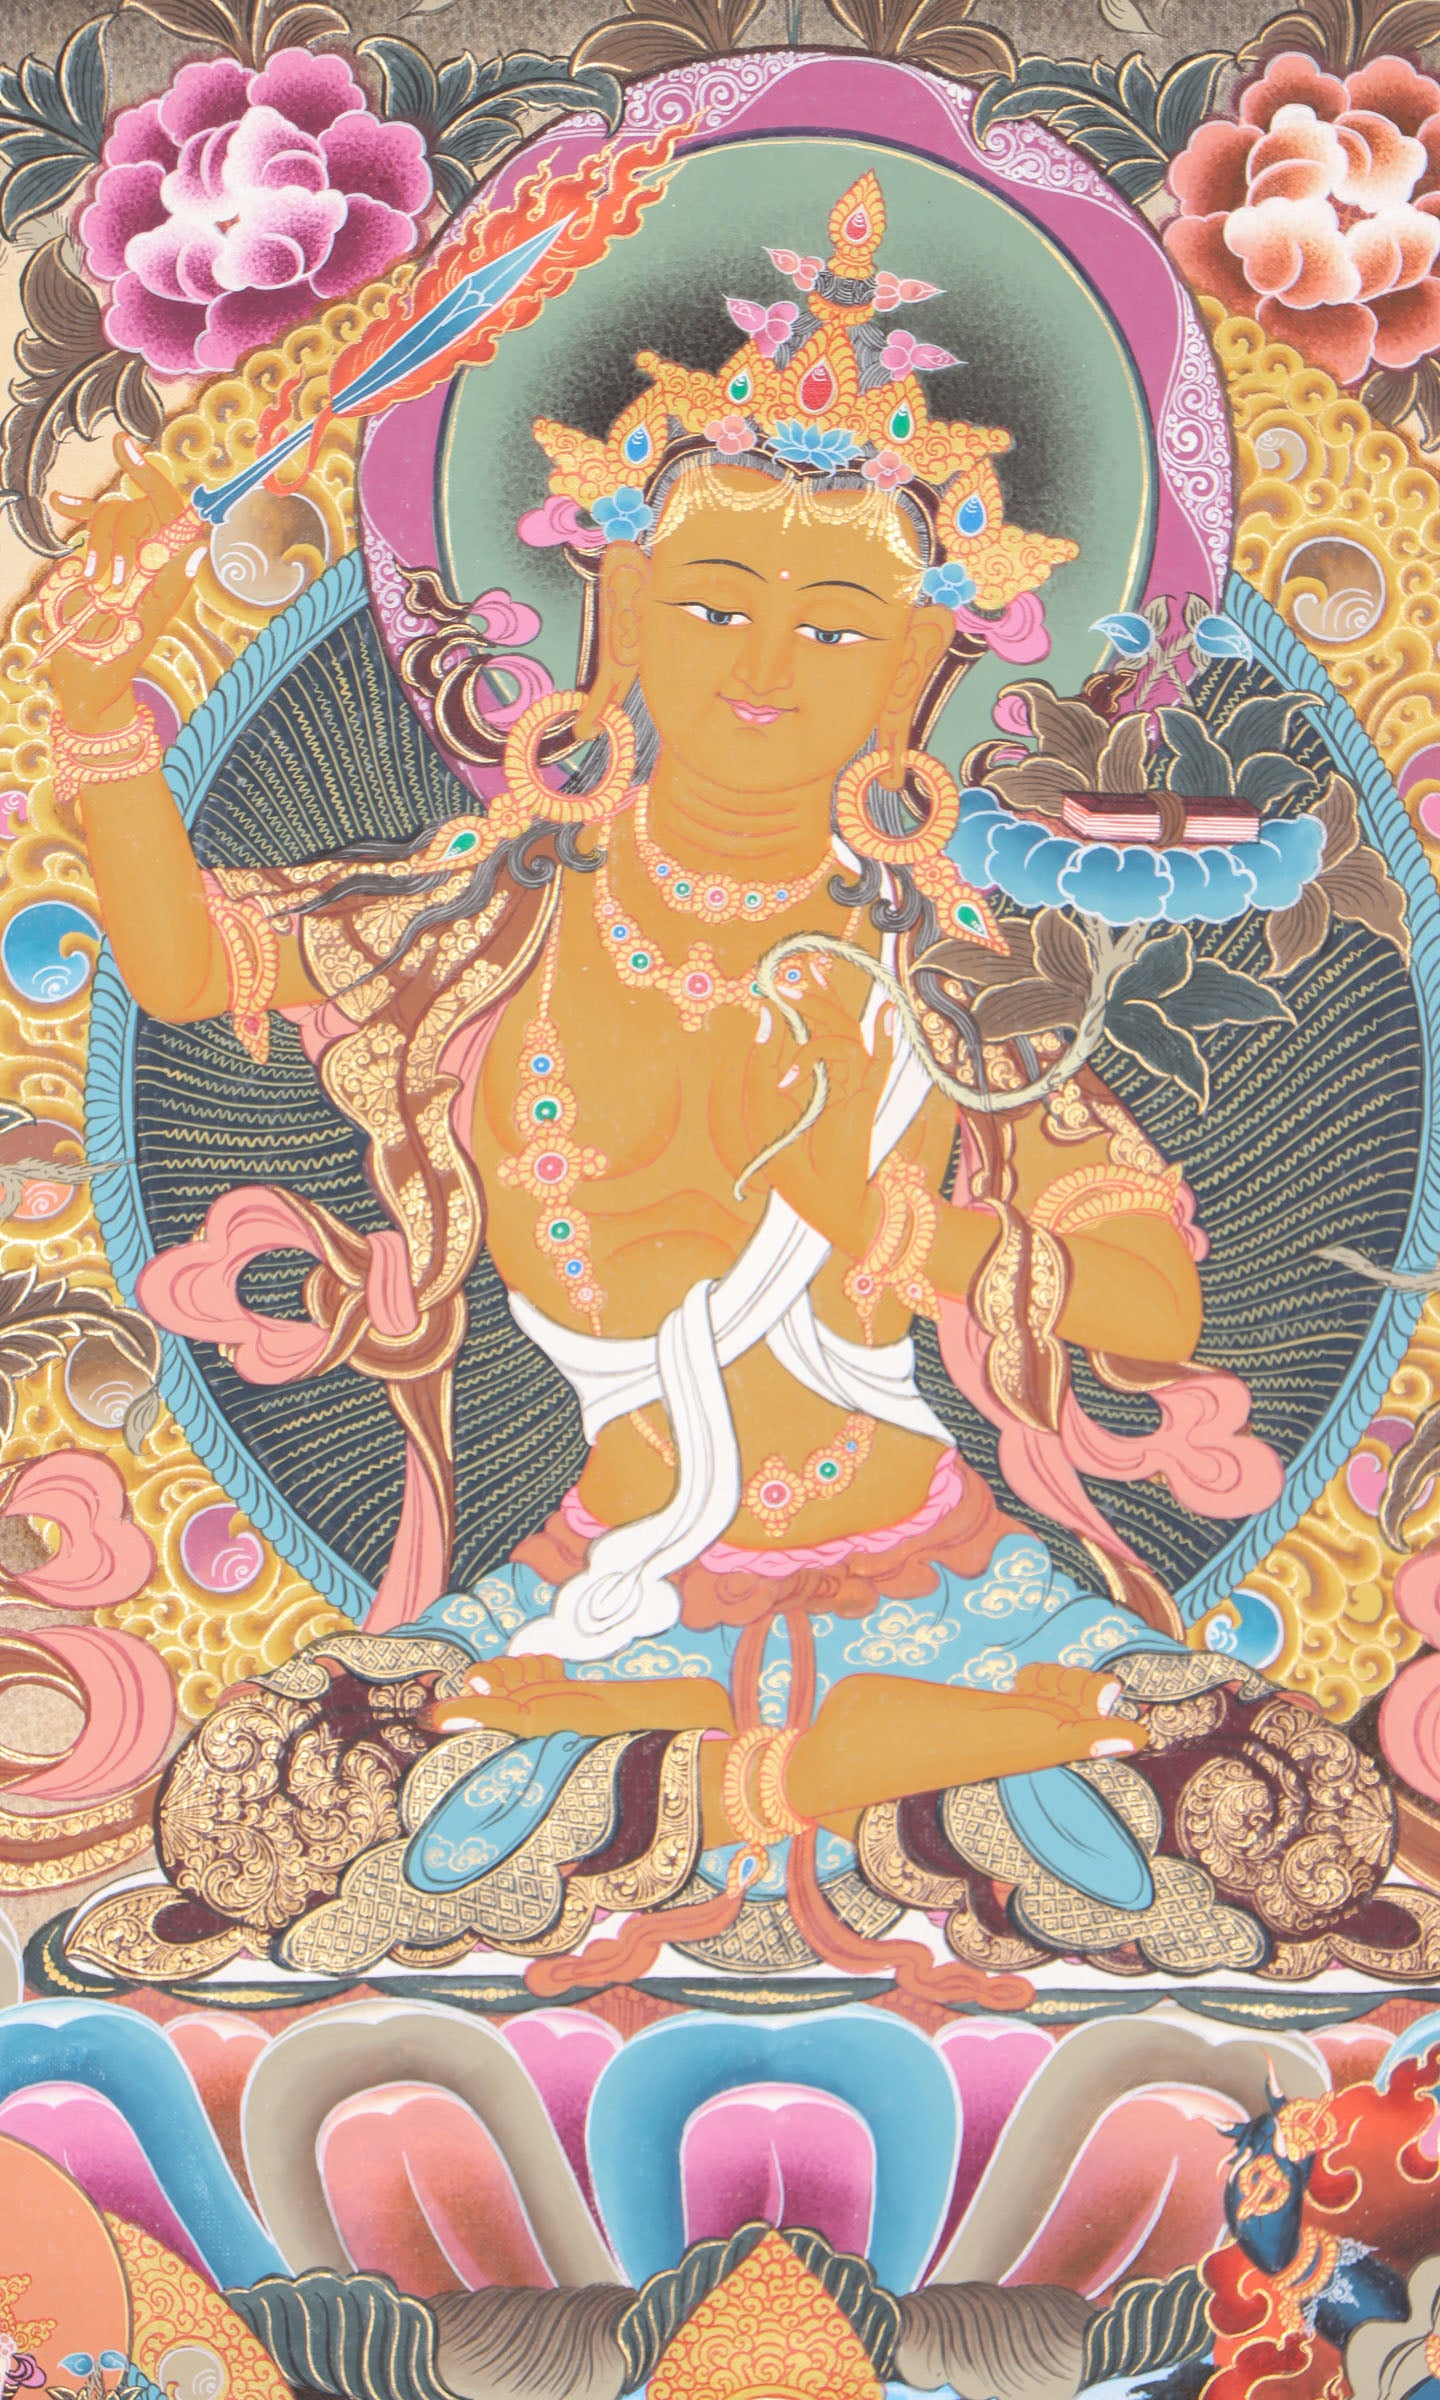 Manjushri Thangka for wisdom and compassion.